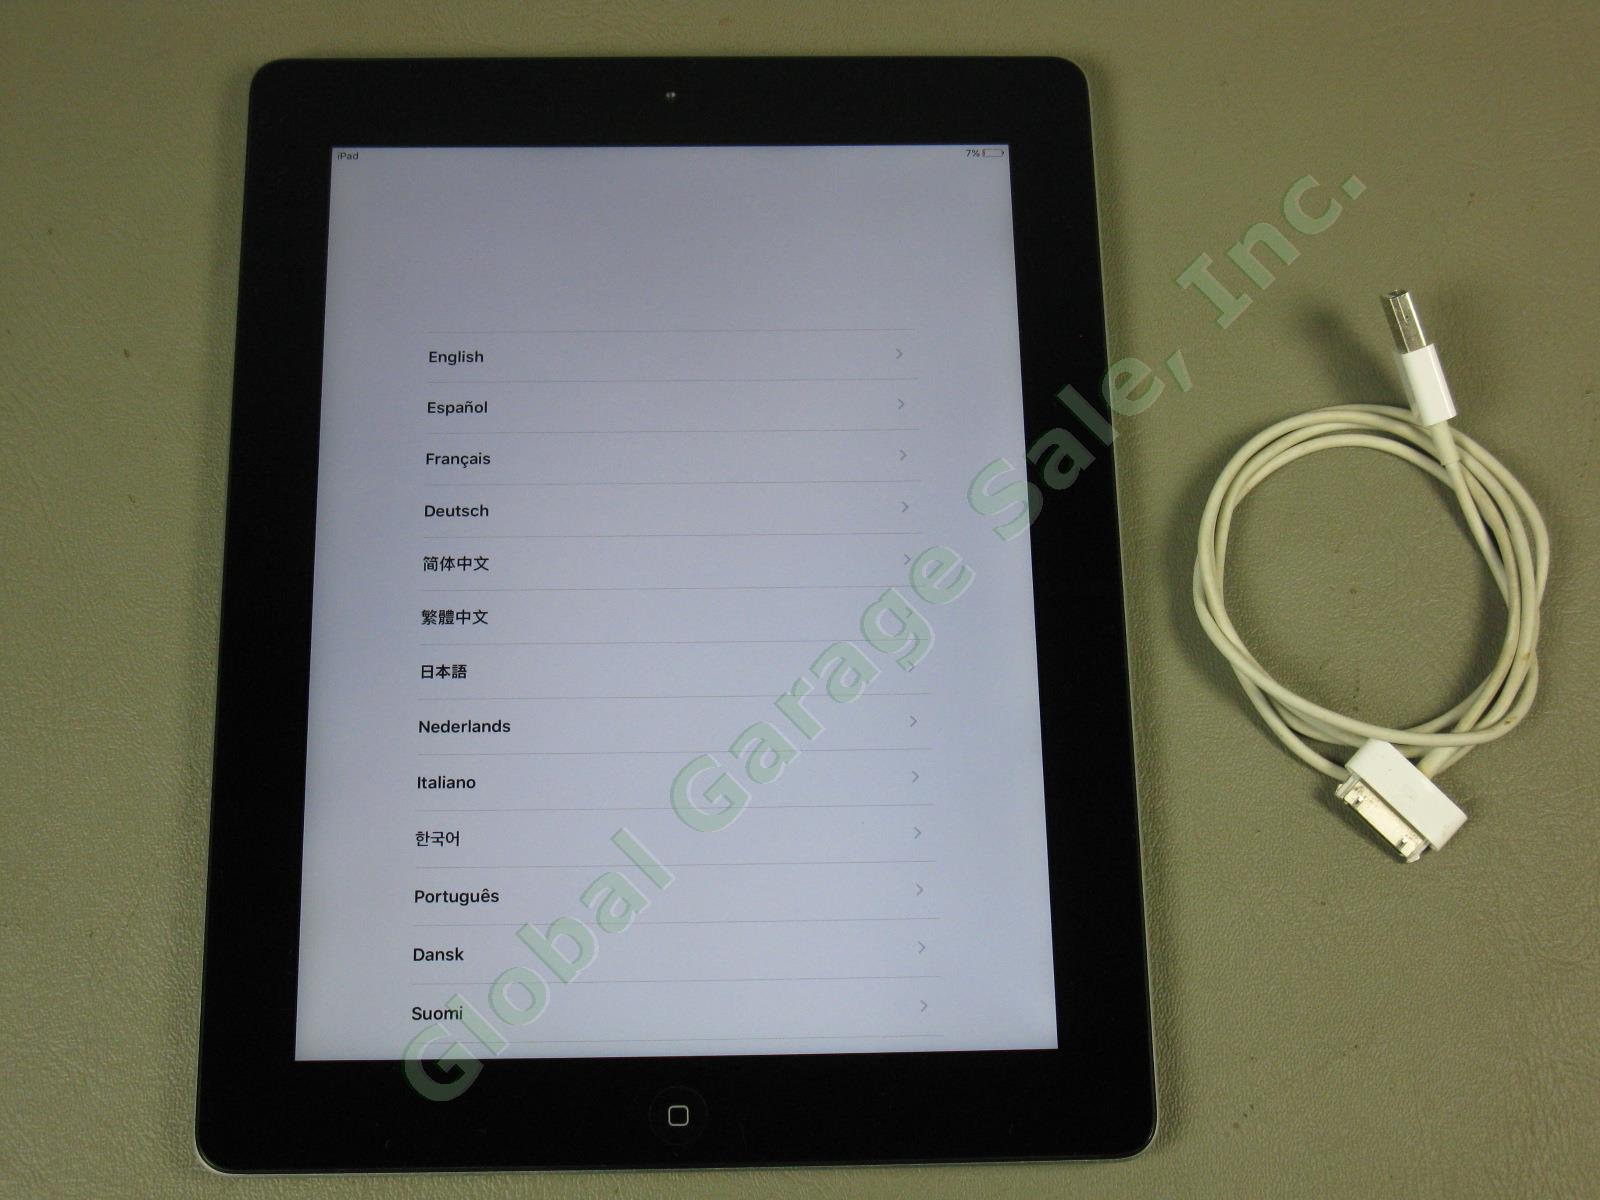 Apple iPad 3 3rd Generation Tablet A1416 MC706LL/A 32GB Wi-Fi Black Works Great 2